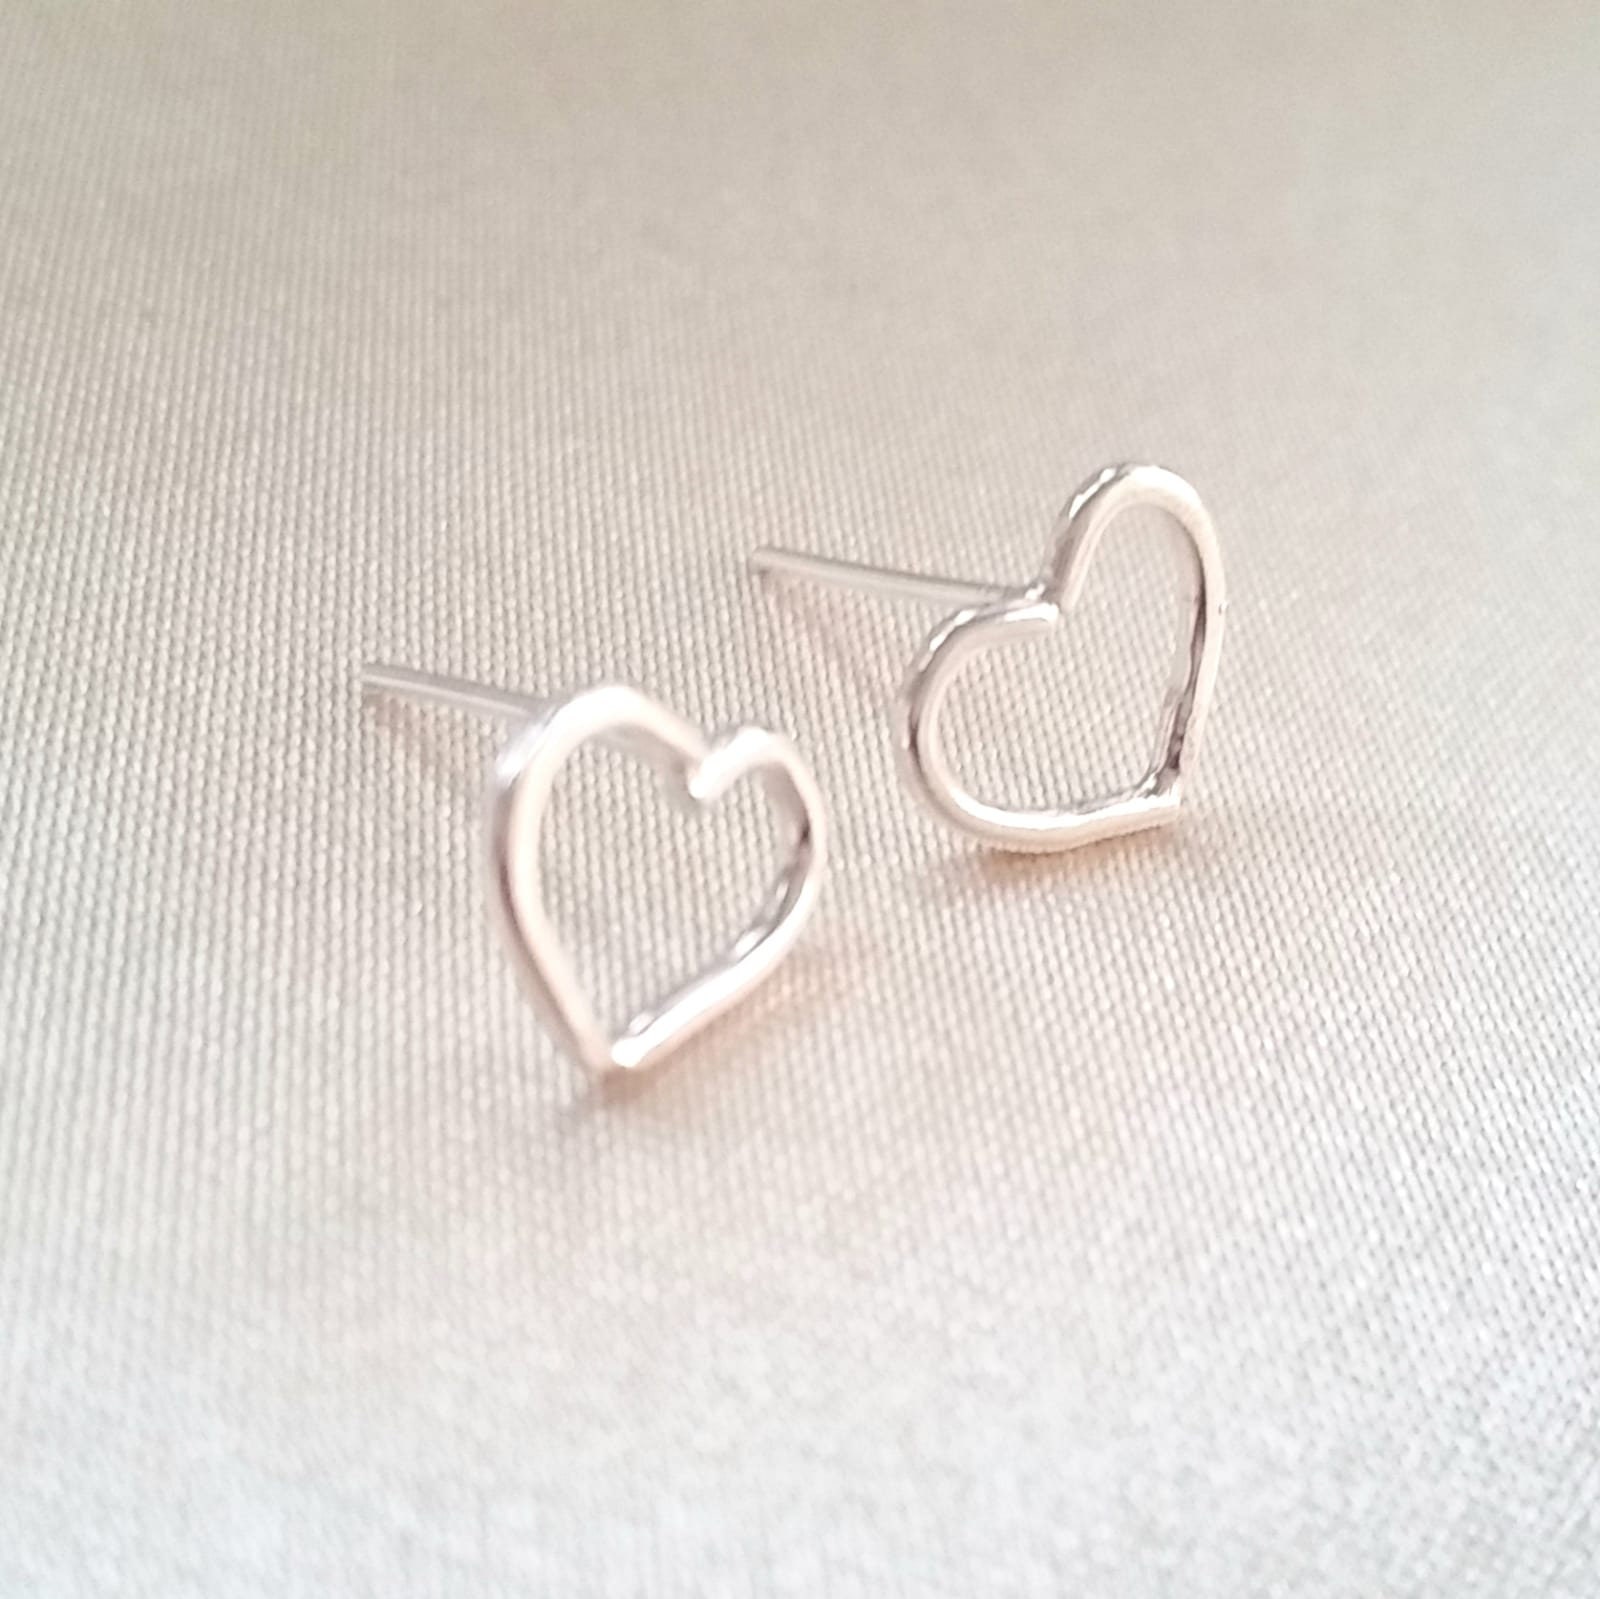 Handmade sterling silver heart-shape stud earrings | Etsy